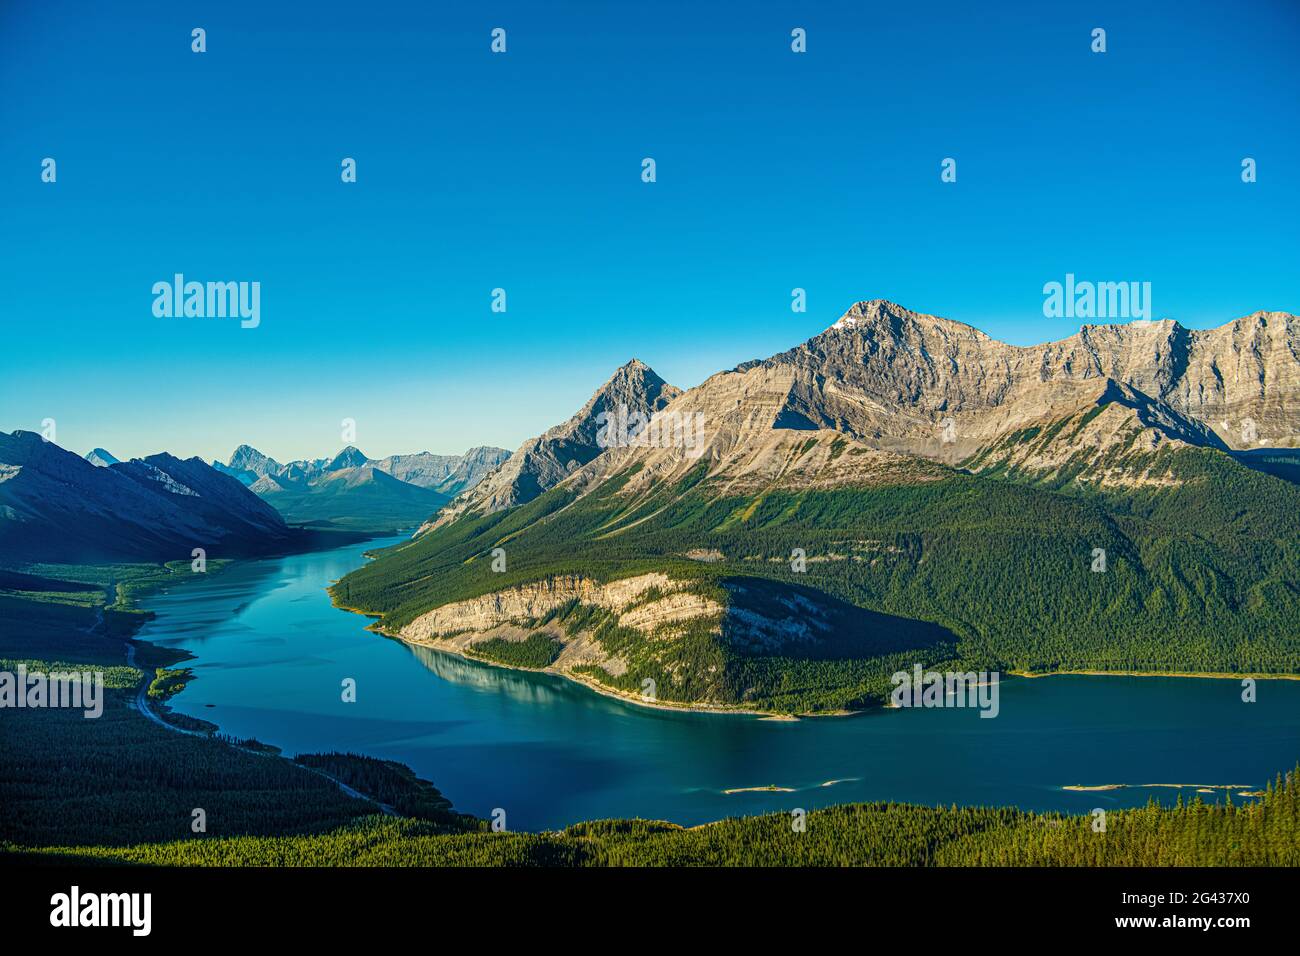 Vista aerea del lago artificiale Spray Lakes e delle Montagne Rocciose canadesi, Alberta, Canada Foto Stock